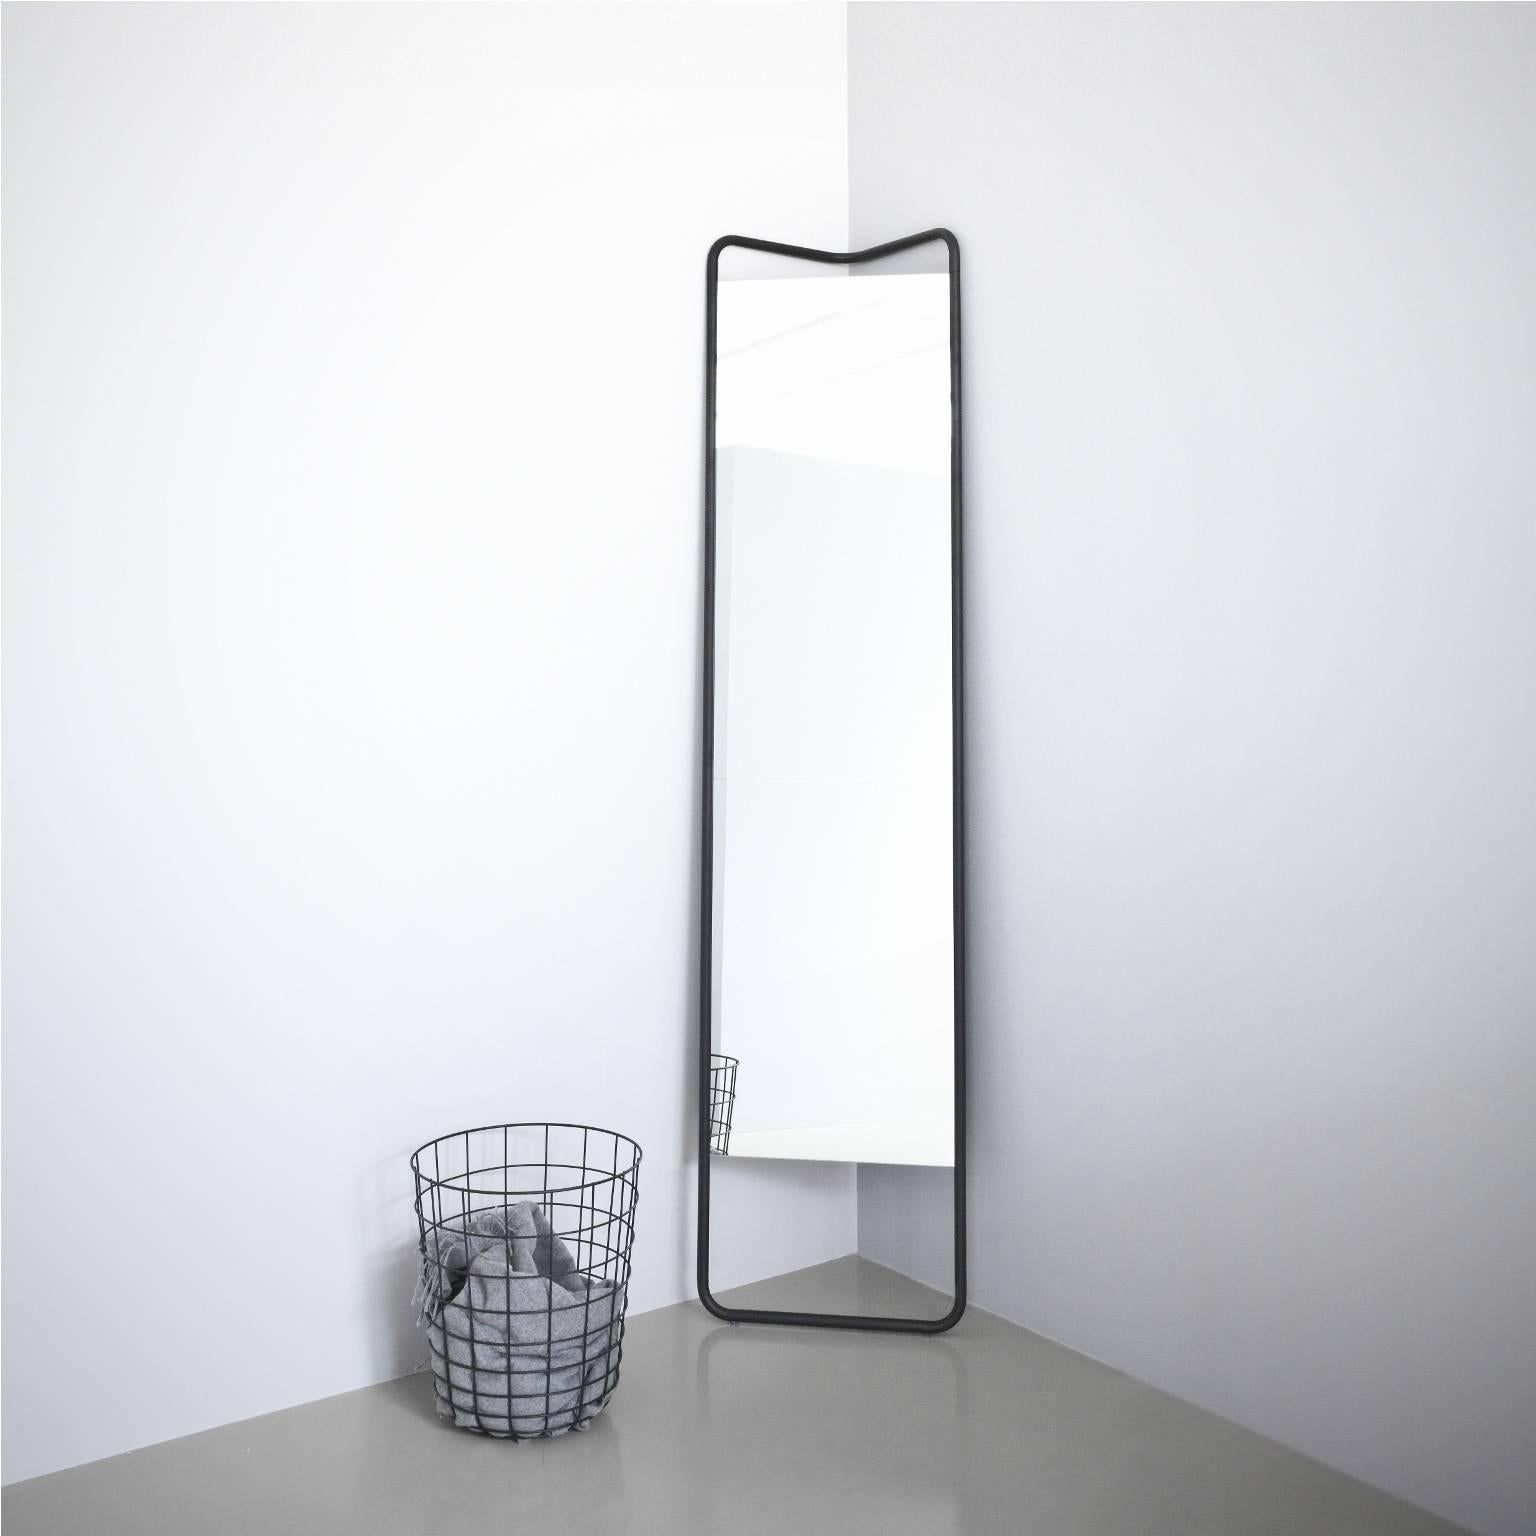 Scandinavian Modern Kaschkasch Floor Mirror by Kaschkasch Cologne, Black Frame